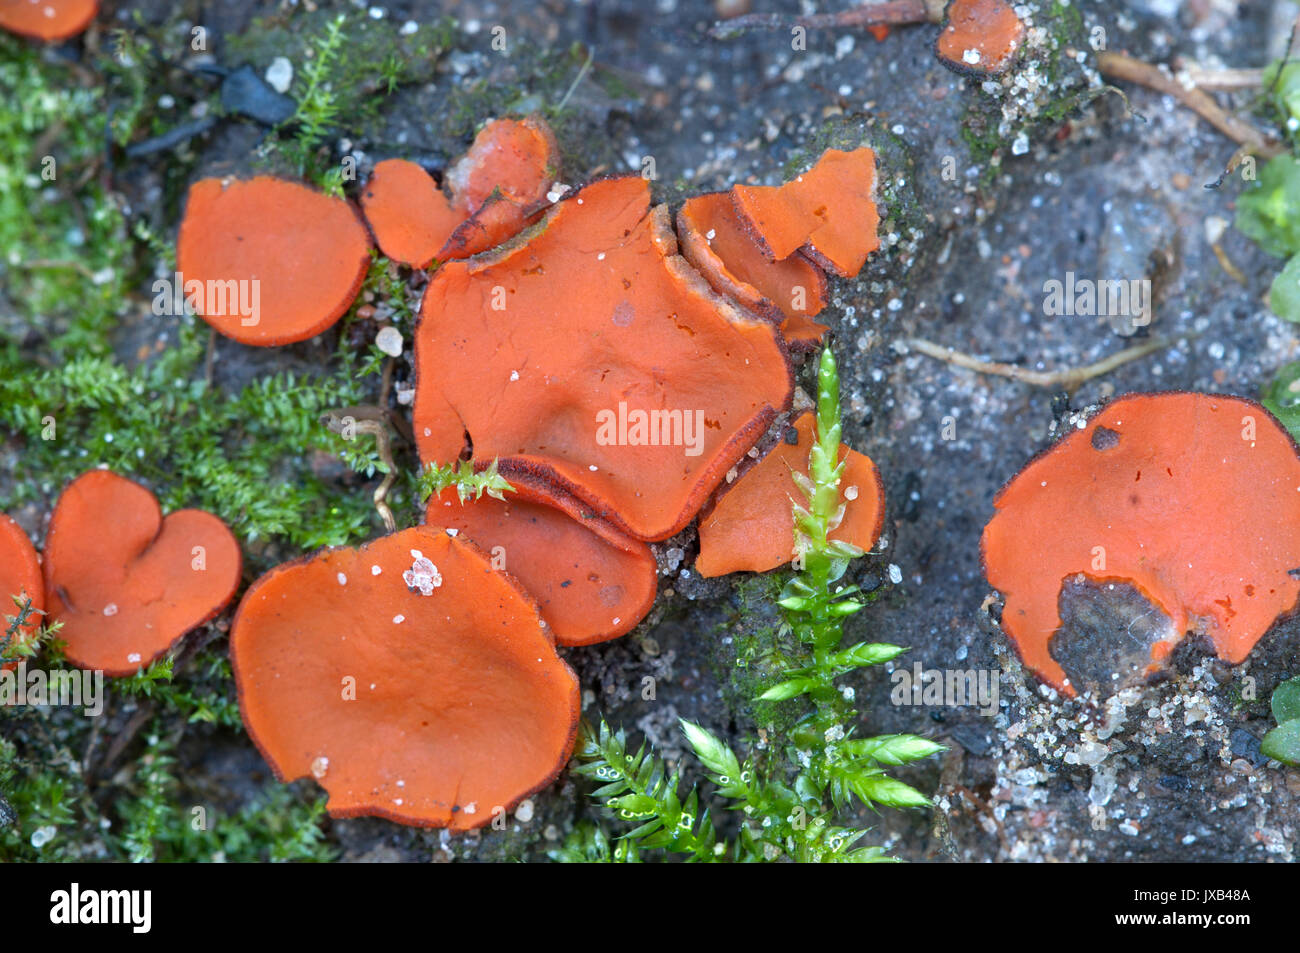 Scutellinia sp. fungus, close up shot, local focus Stock Photo